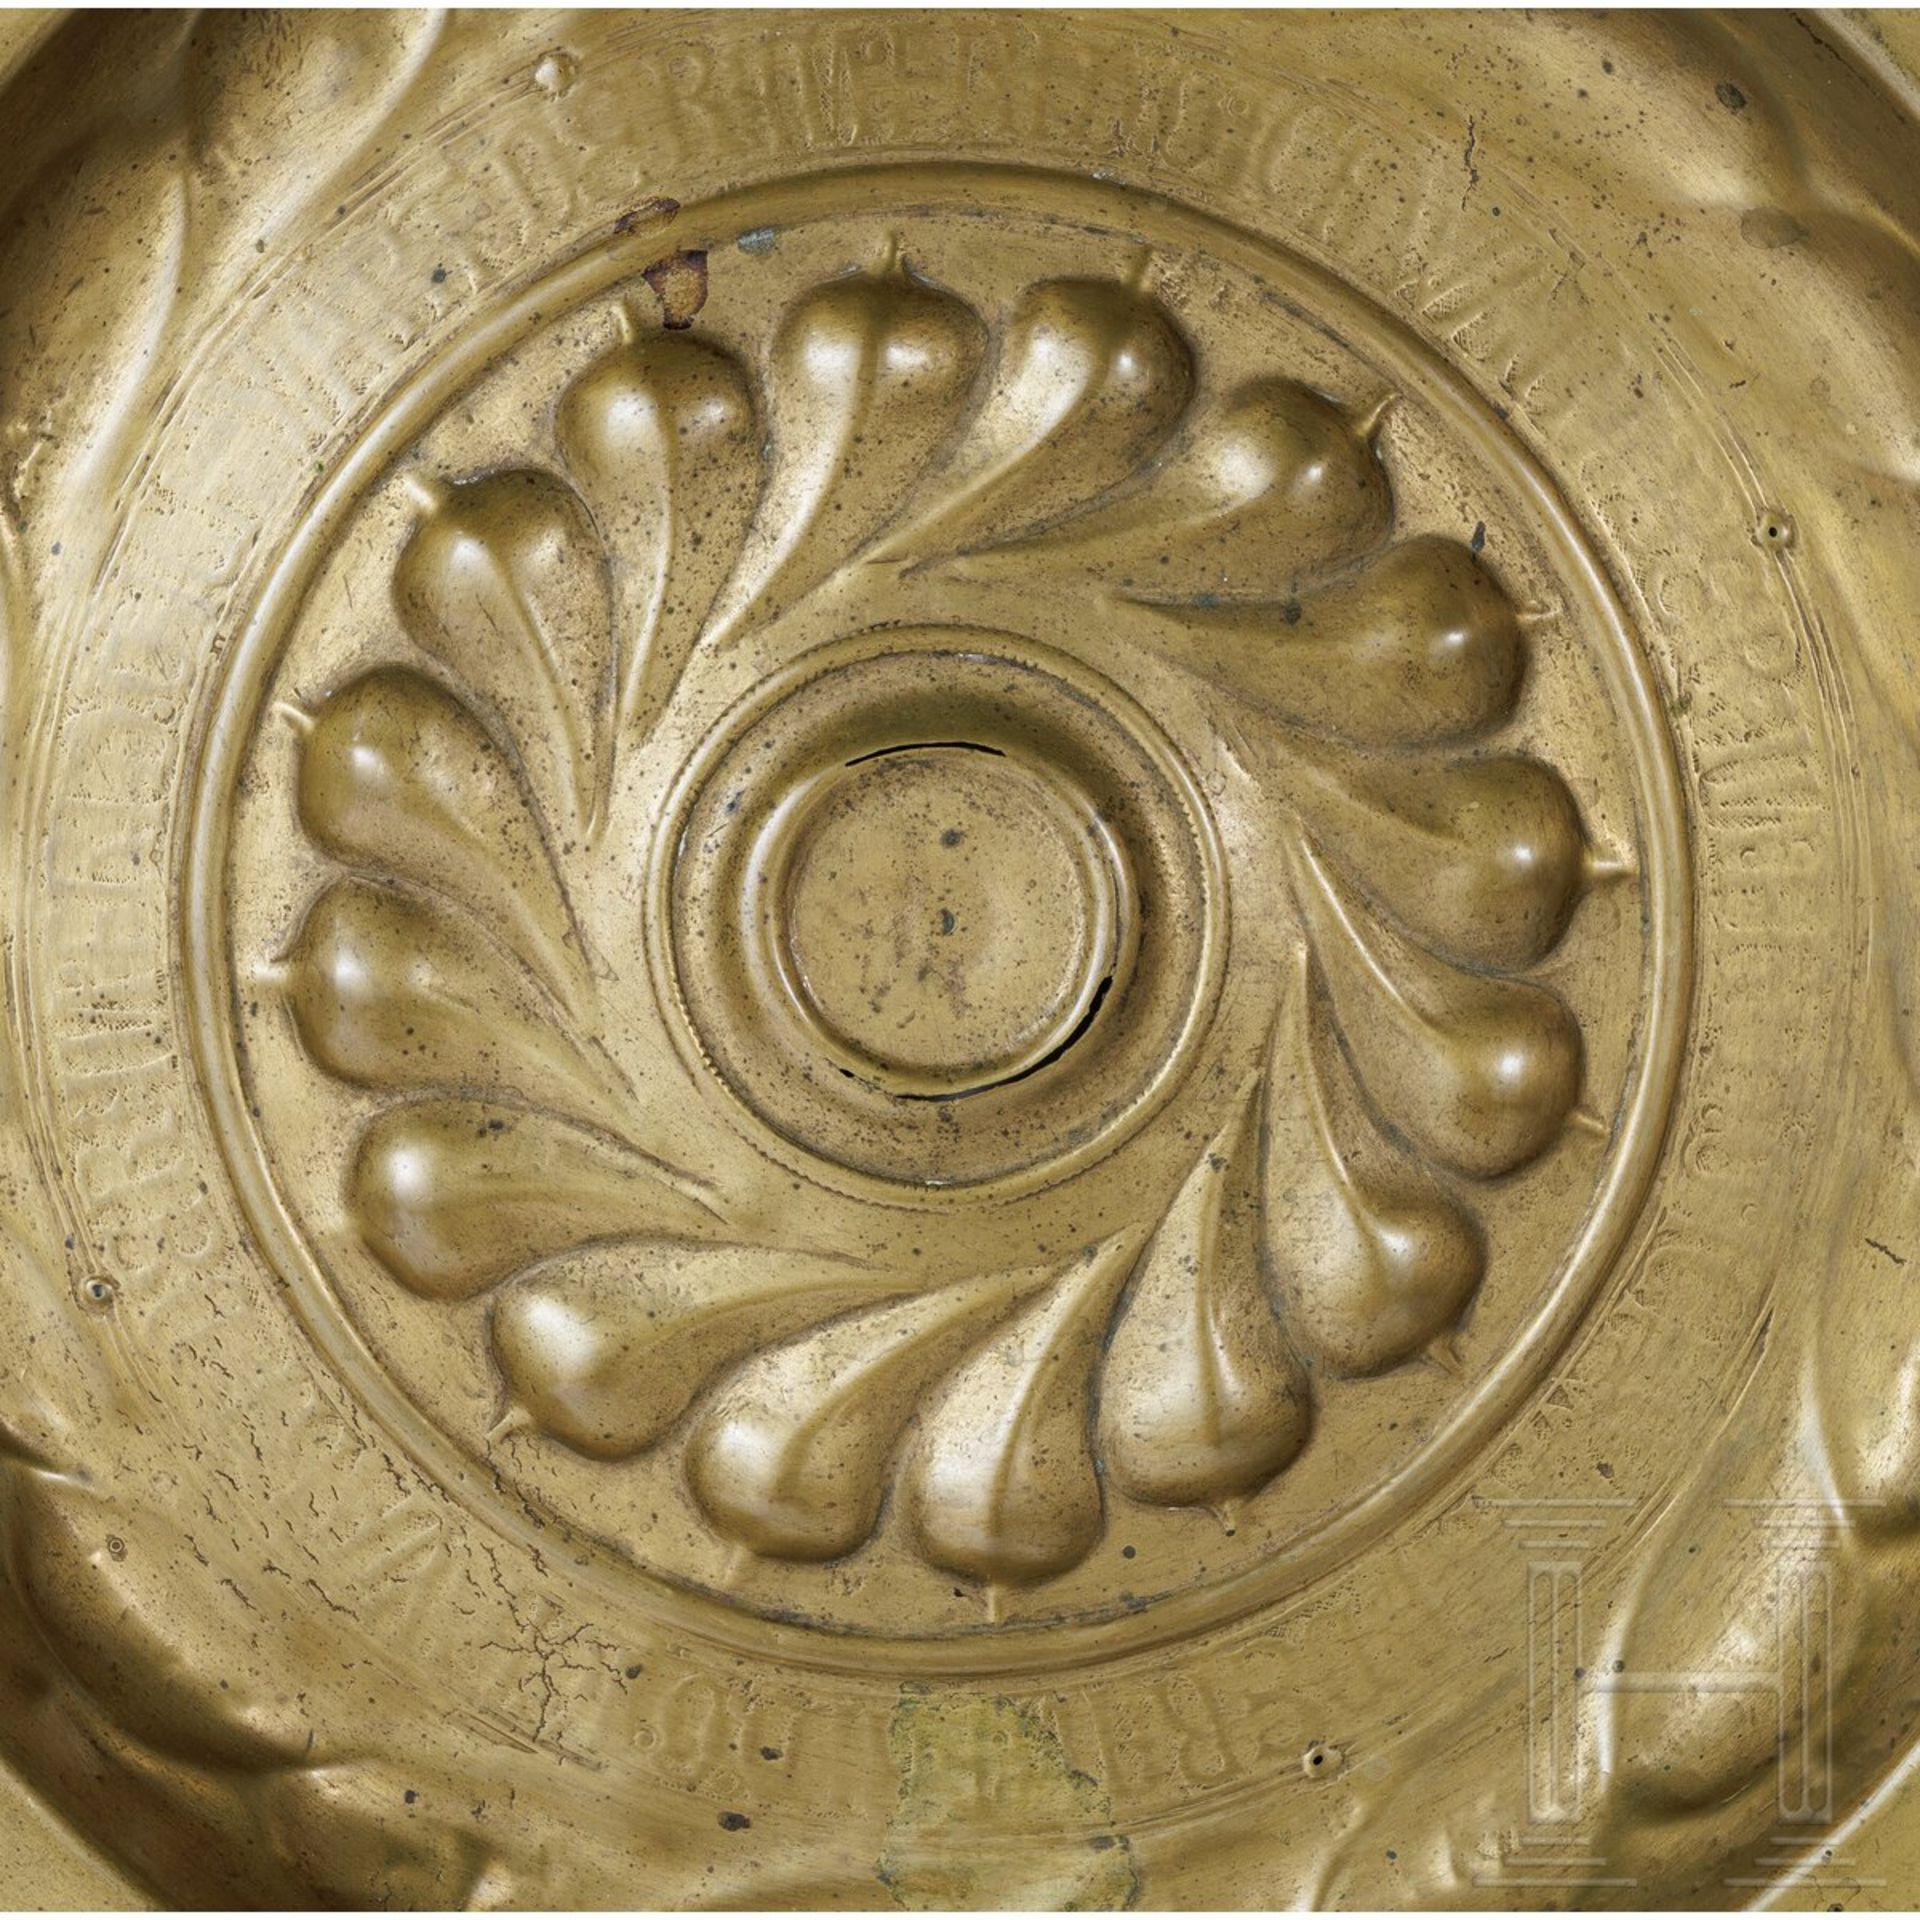 Beckenschlägerschüssel mit Fischblasendekor, Nürnberg, um 1500 - Bild 2 aus 3